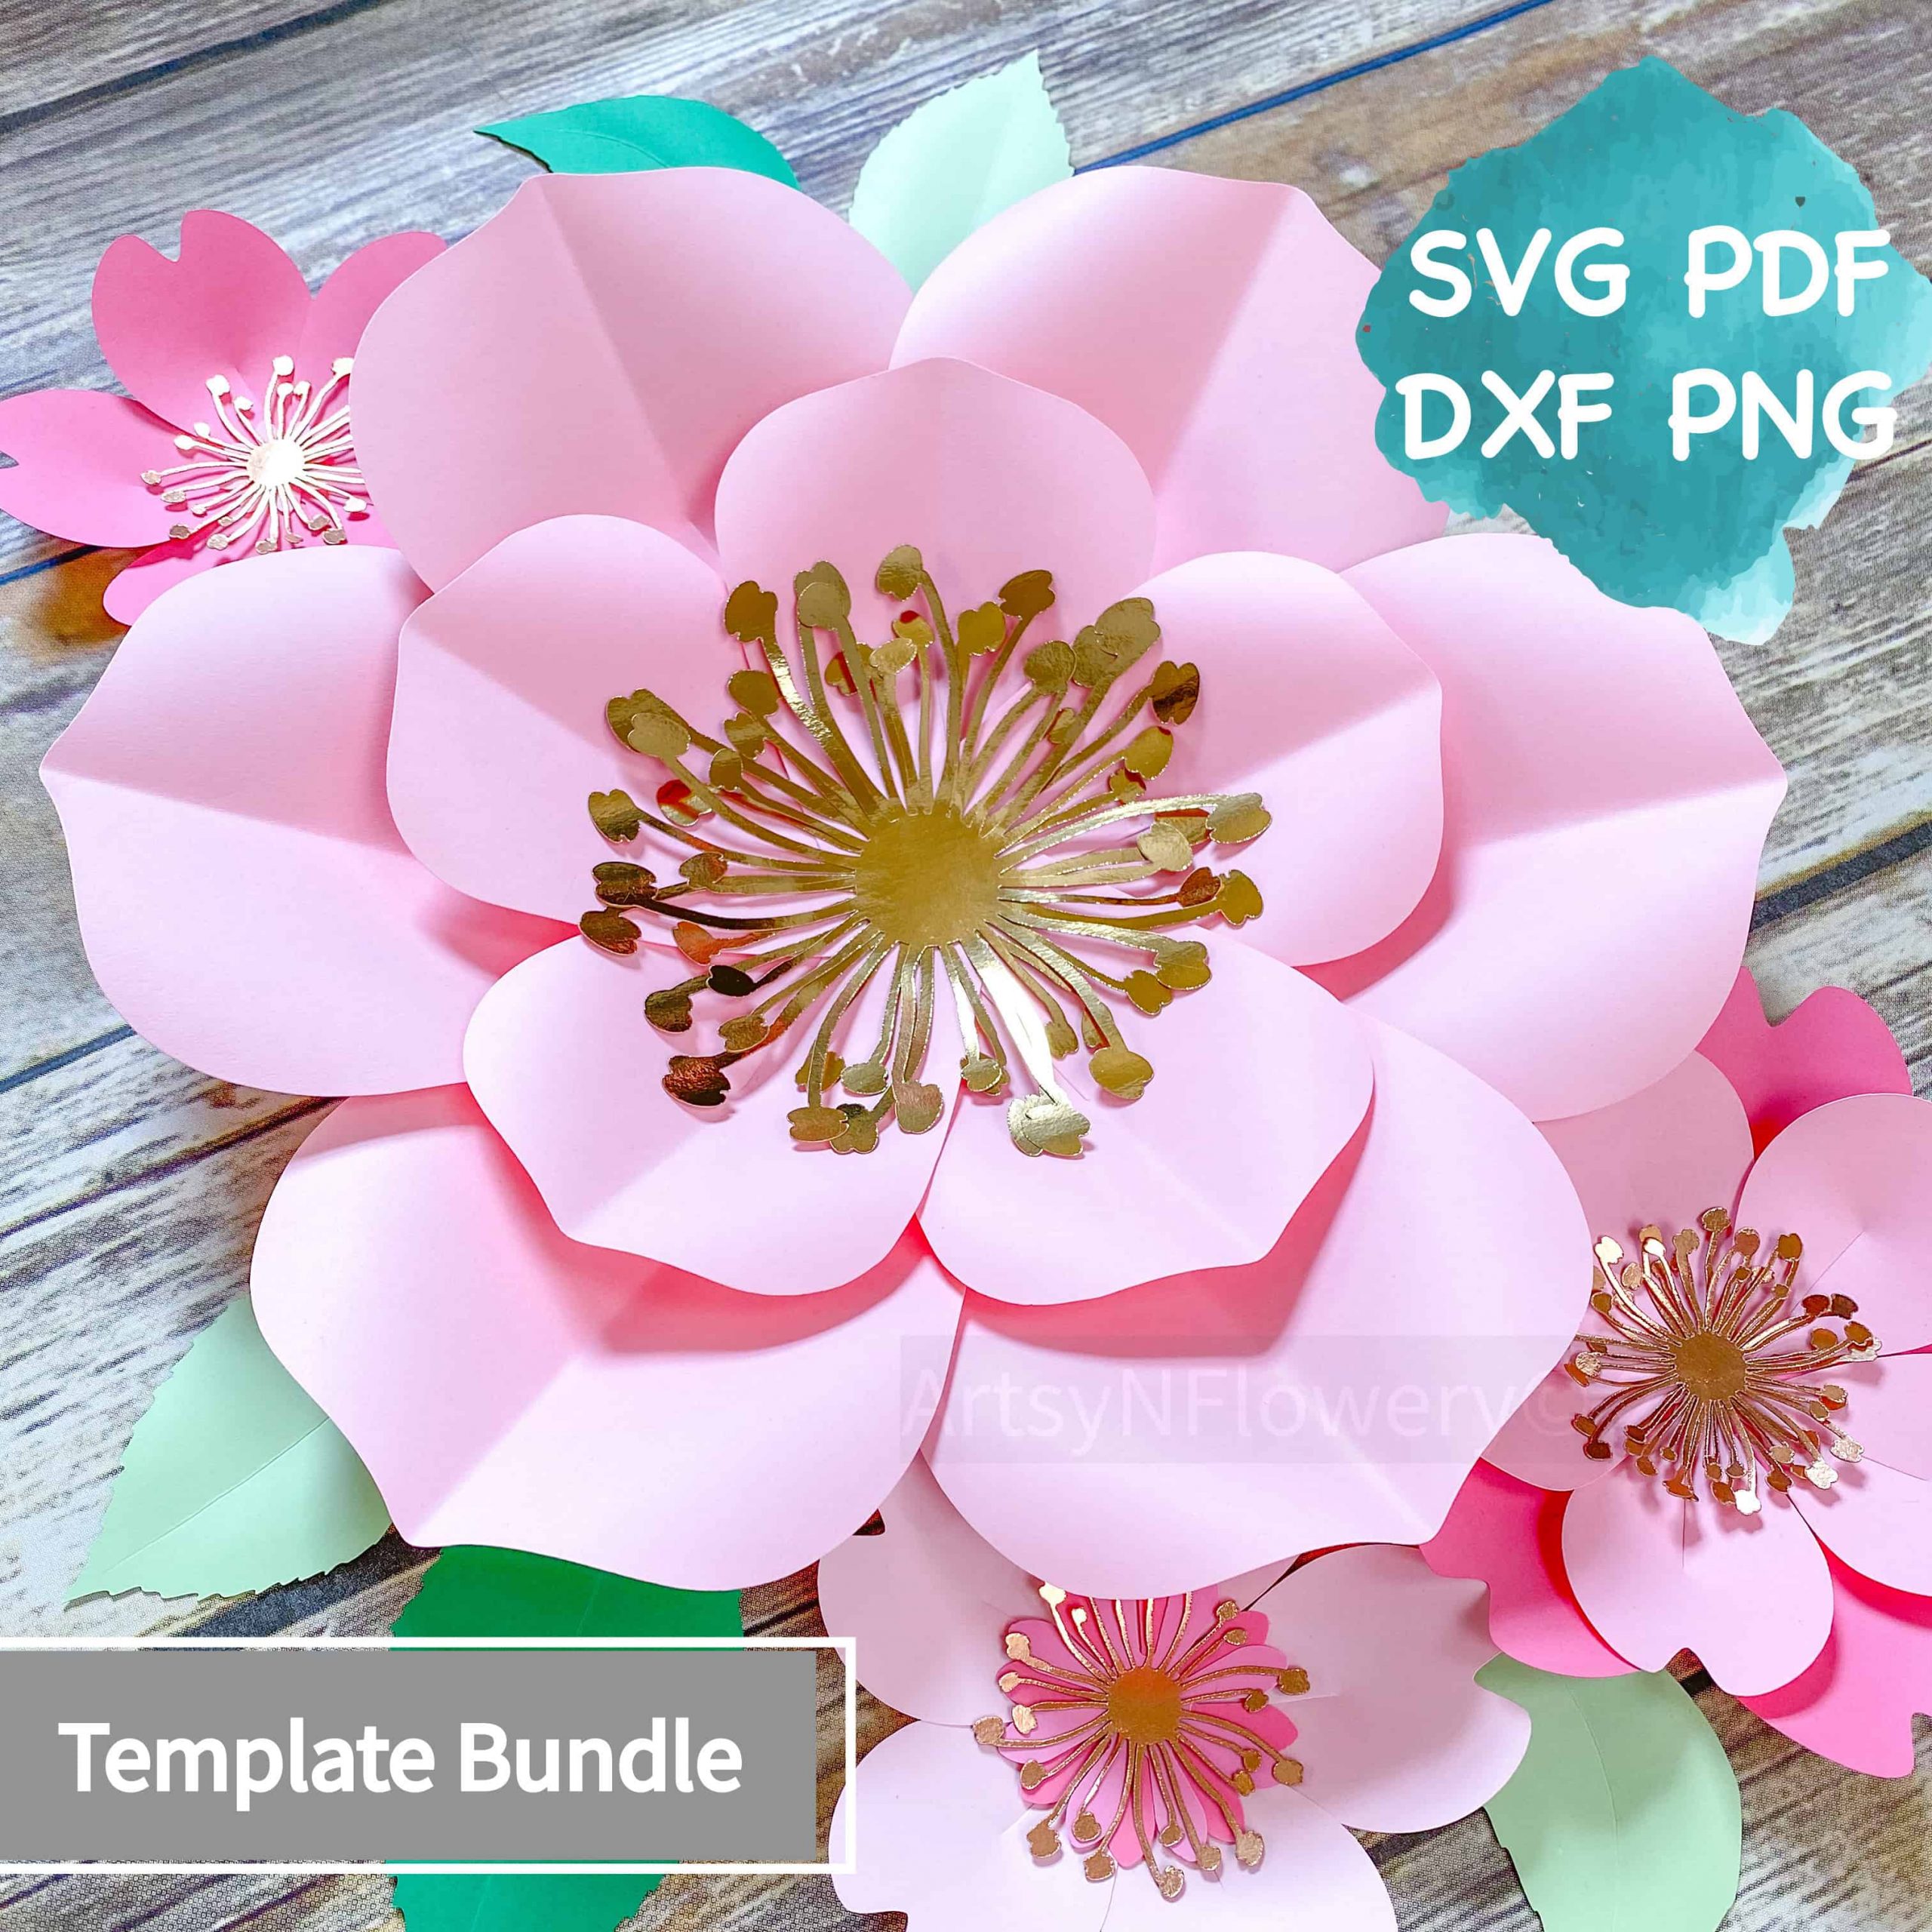 SVG Paper Flower Template, Svg Png Dxf Paper Flowers, Diy Backdrop